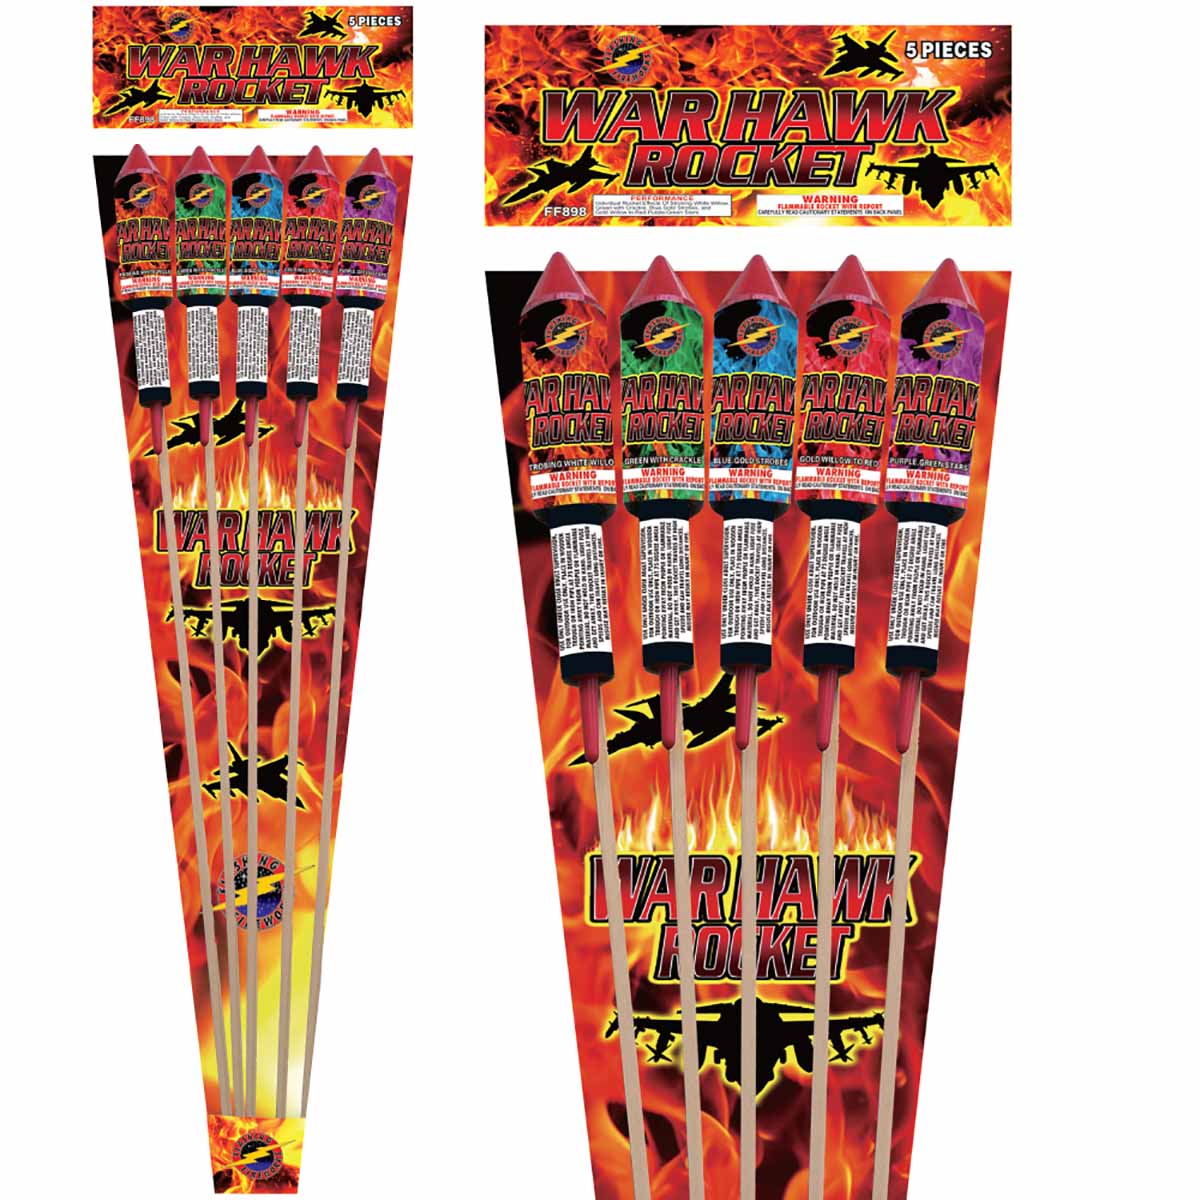 War Hawk Rocket — Wild Willys Fireworks